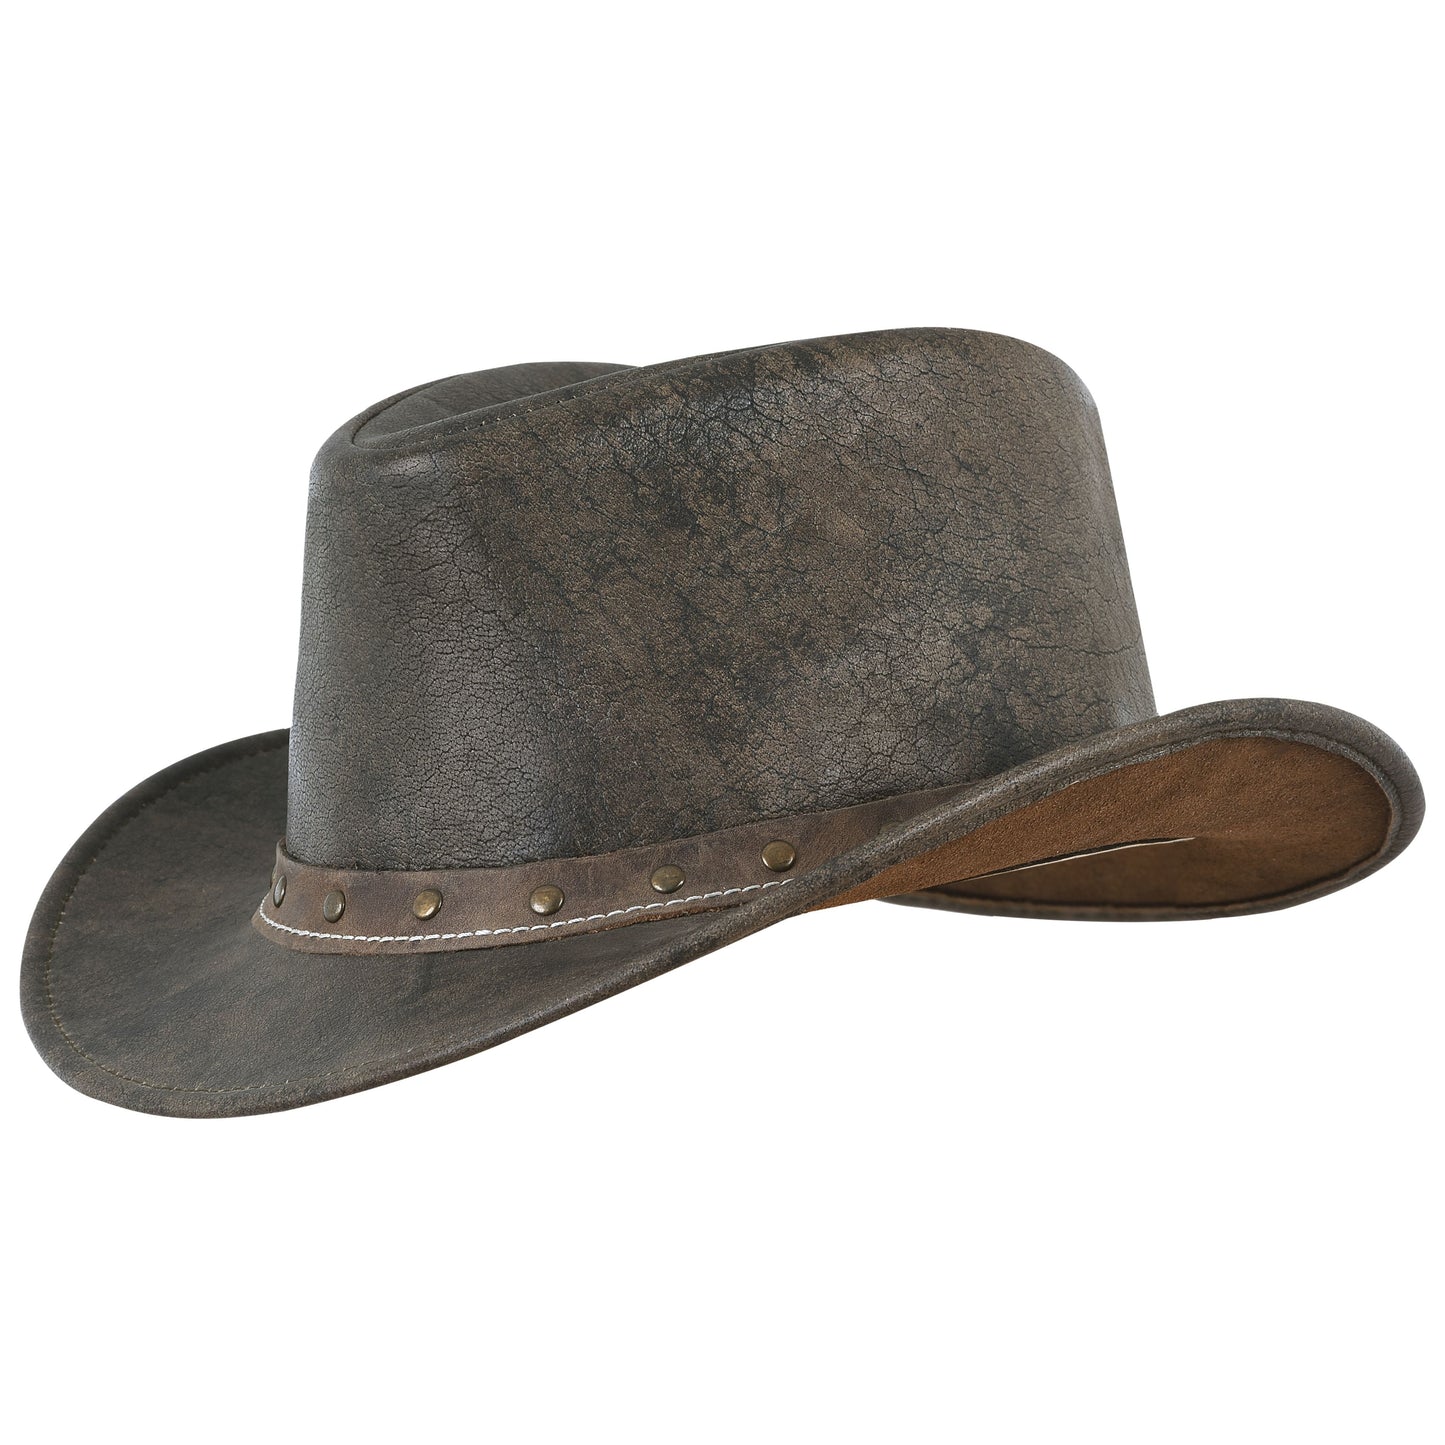 Men's Distressed Black Cowboy Hat in Brown Genuine Leather